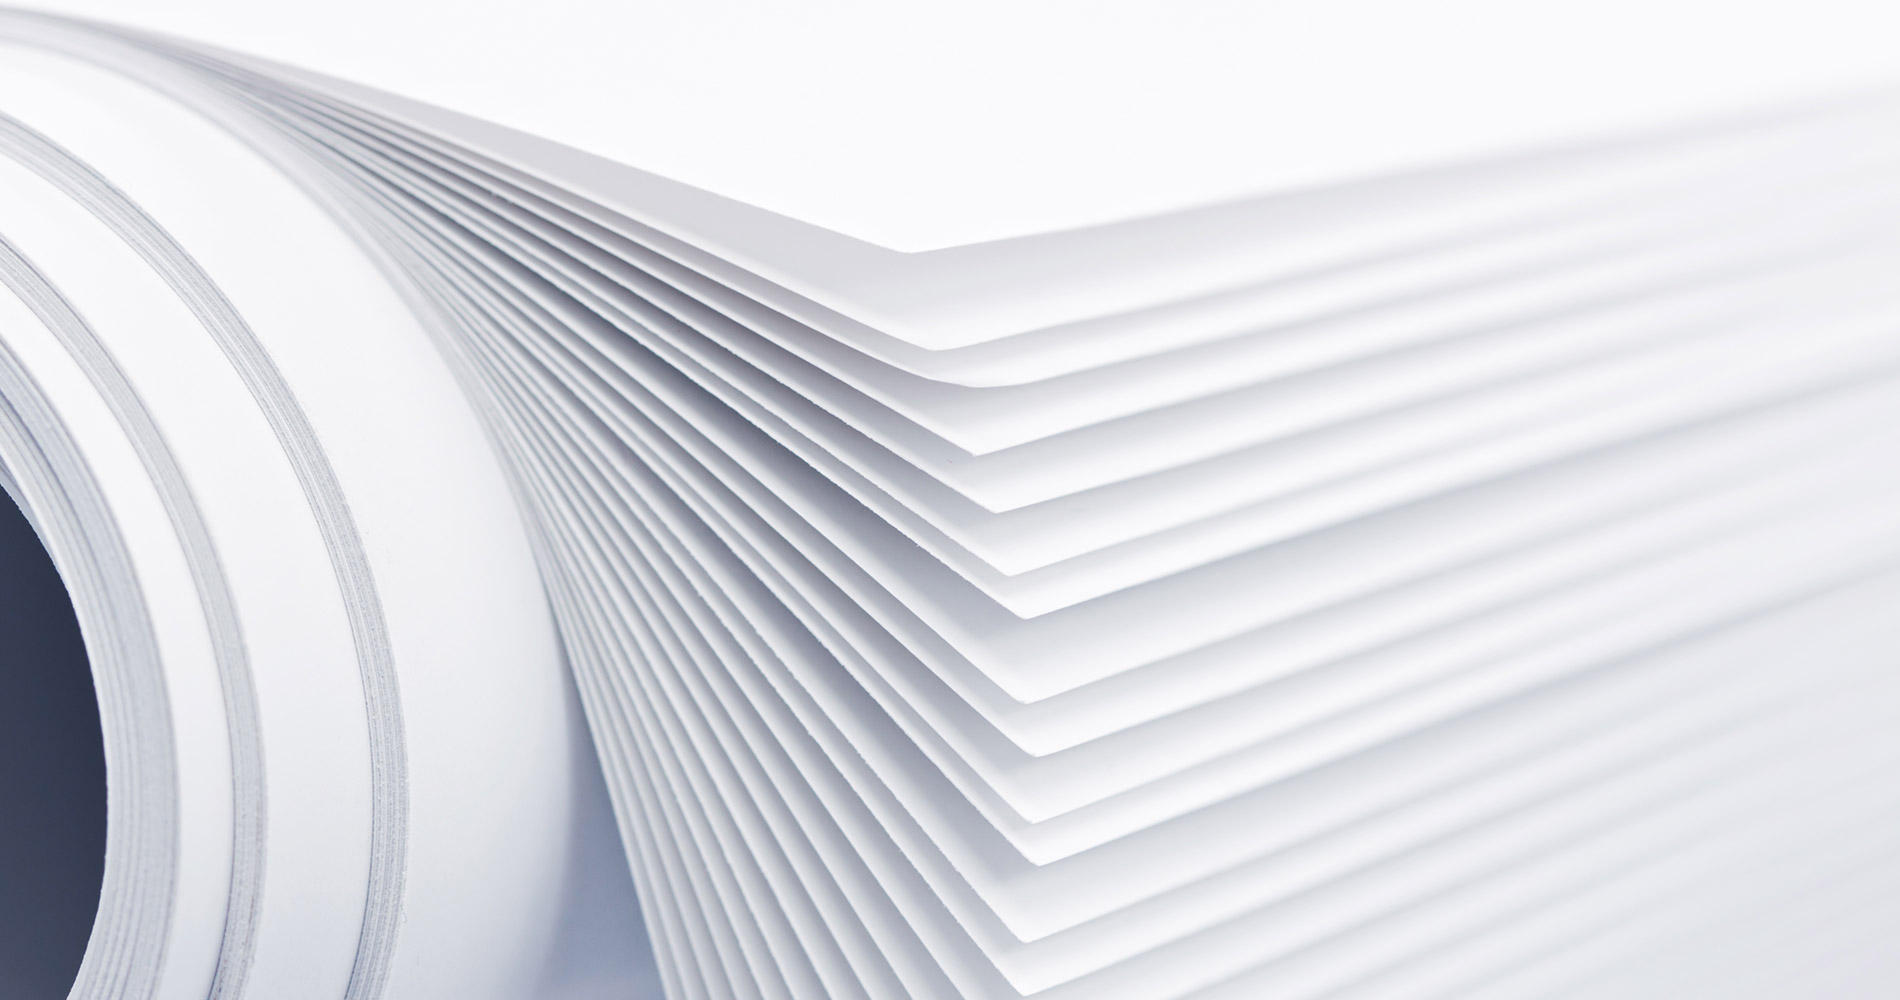 Cần đảm bảo giấy in có chất lượng tốt để hạn chế sự cố kẹt giấy